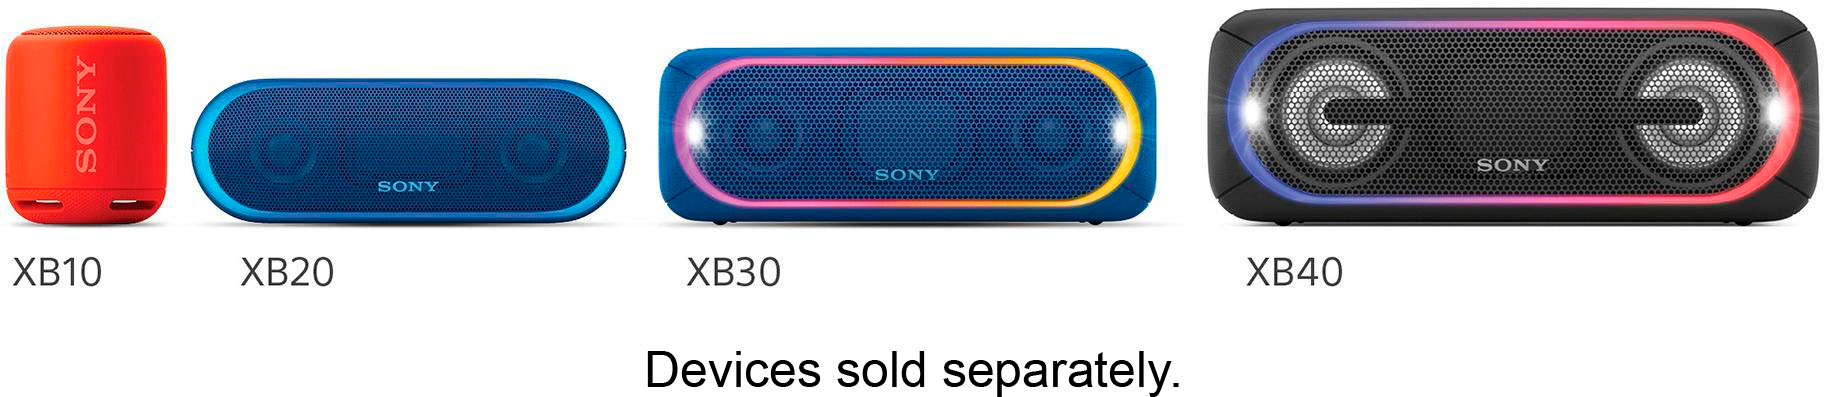 sony wireless speaker model number srs xb20